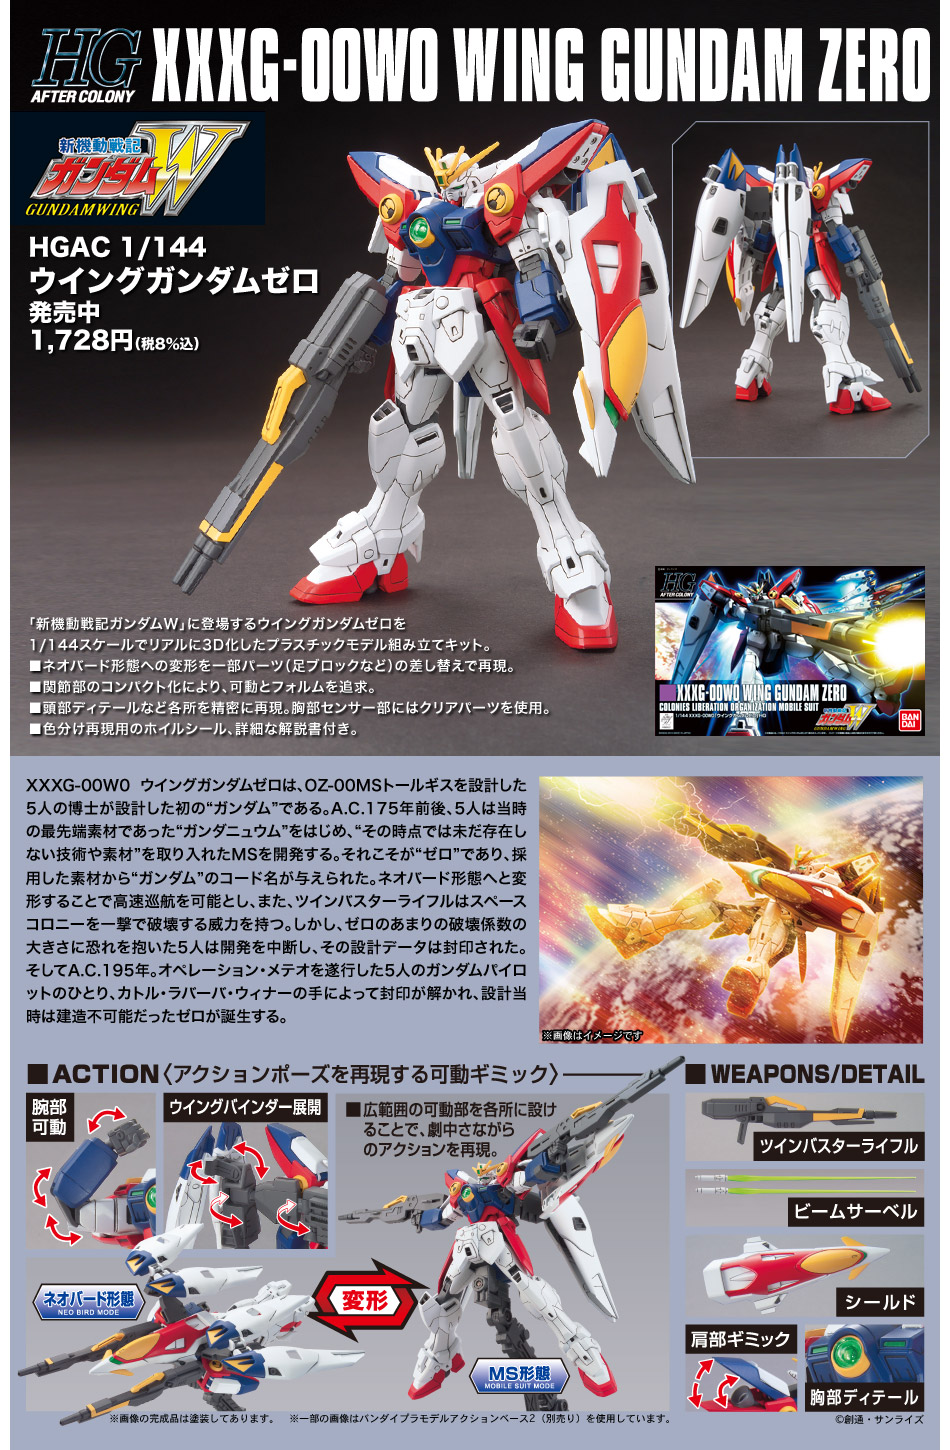 HGAC 1/144 No.174 XXXG-00W0 Wing Gundam Zero